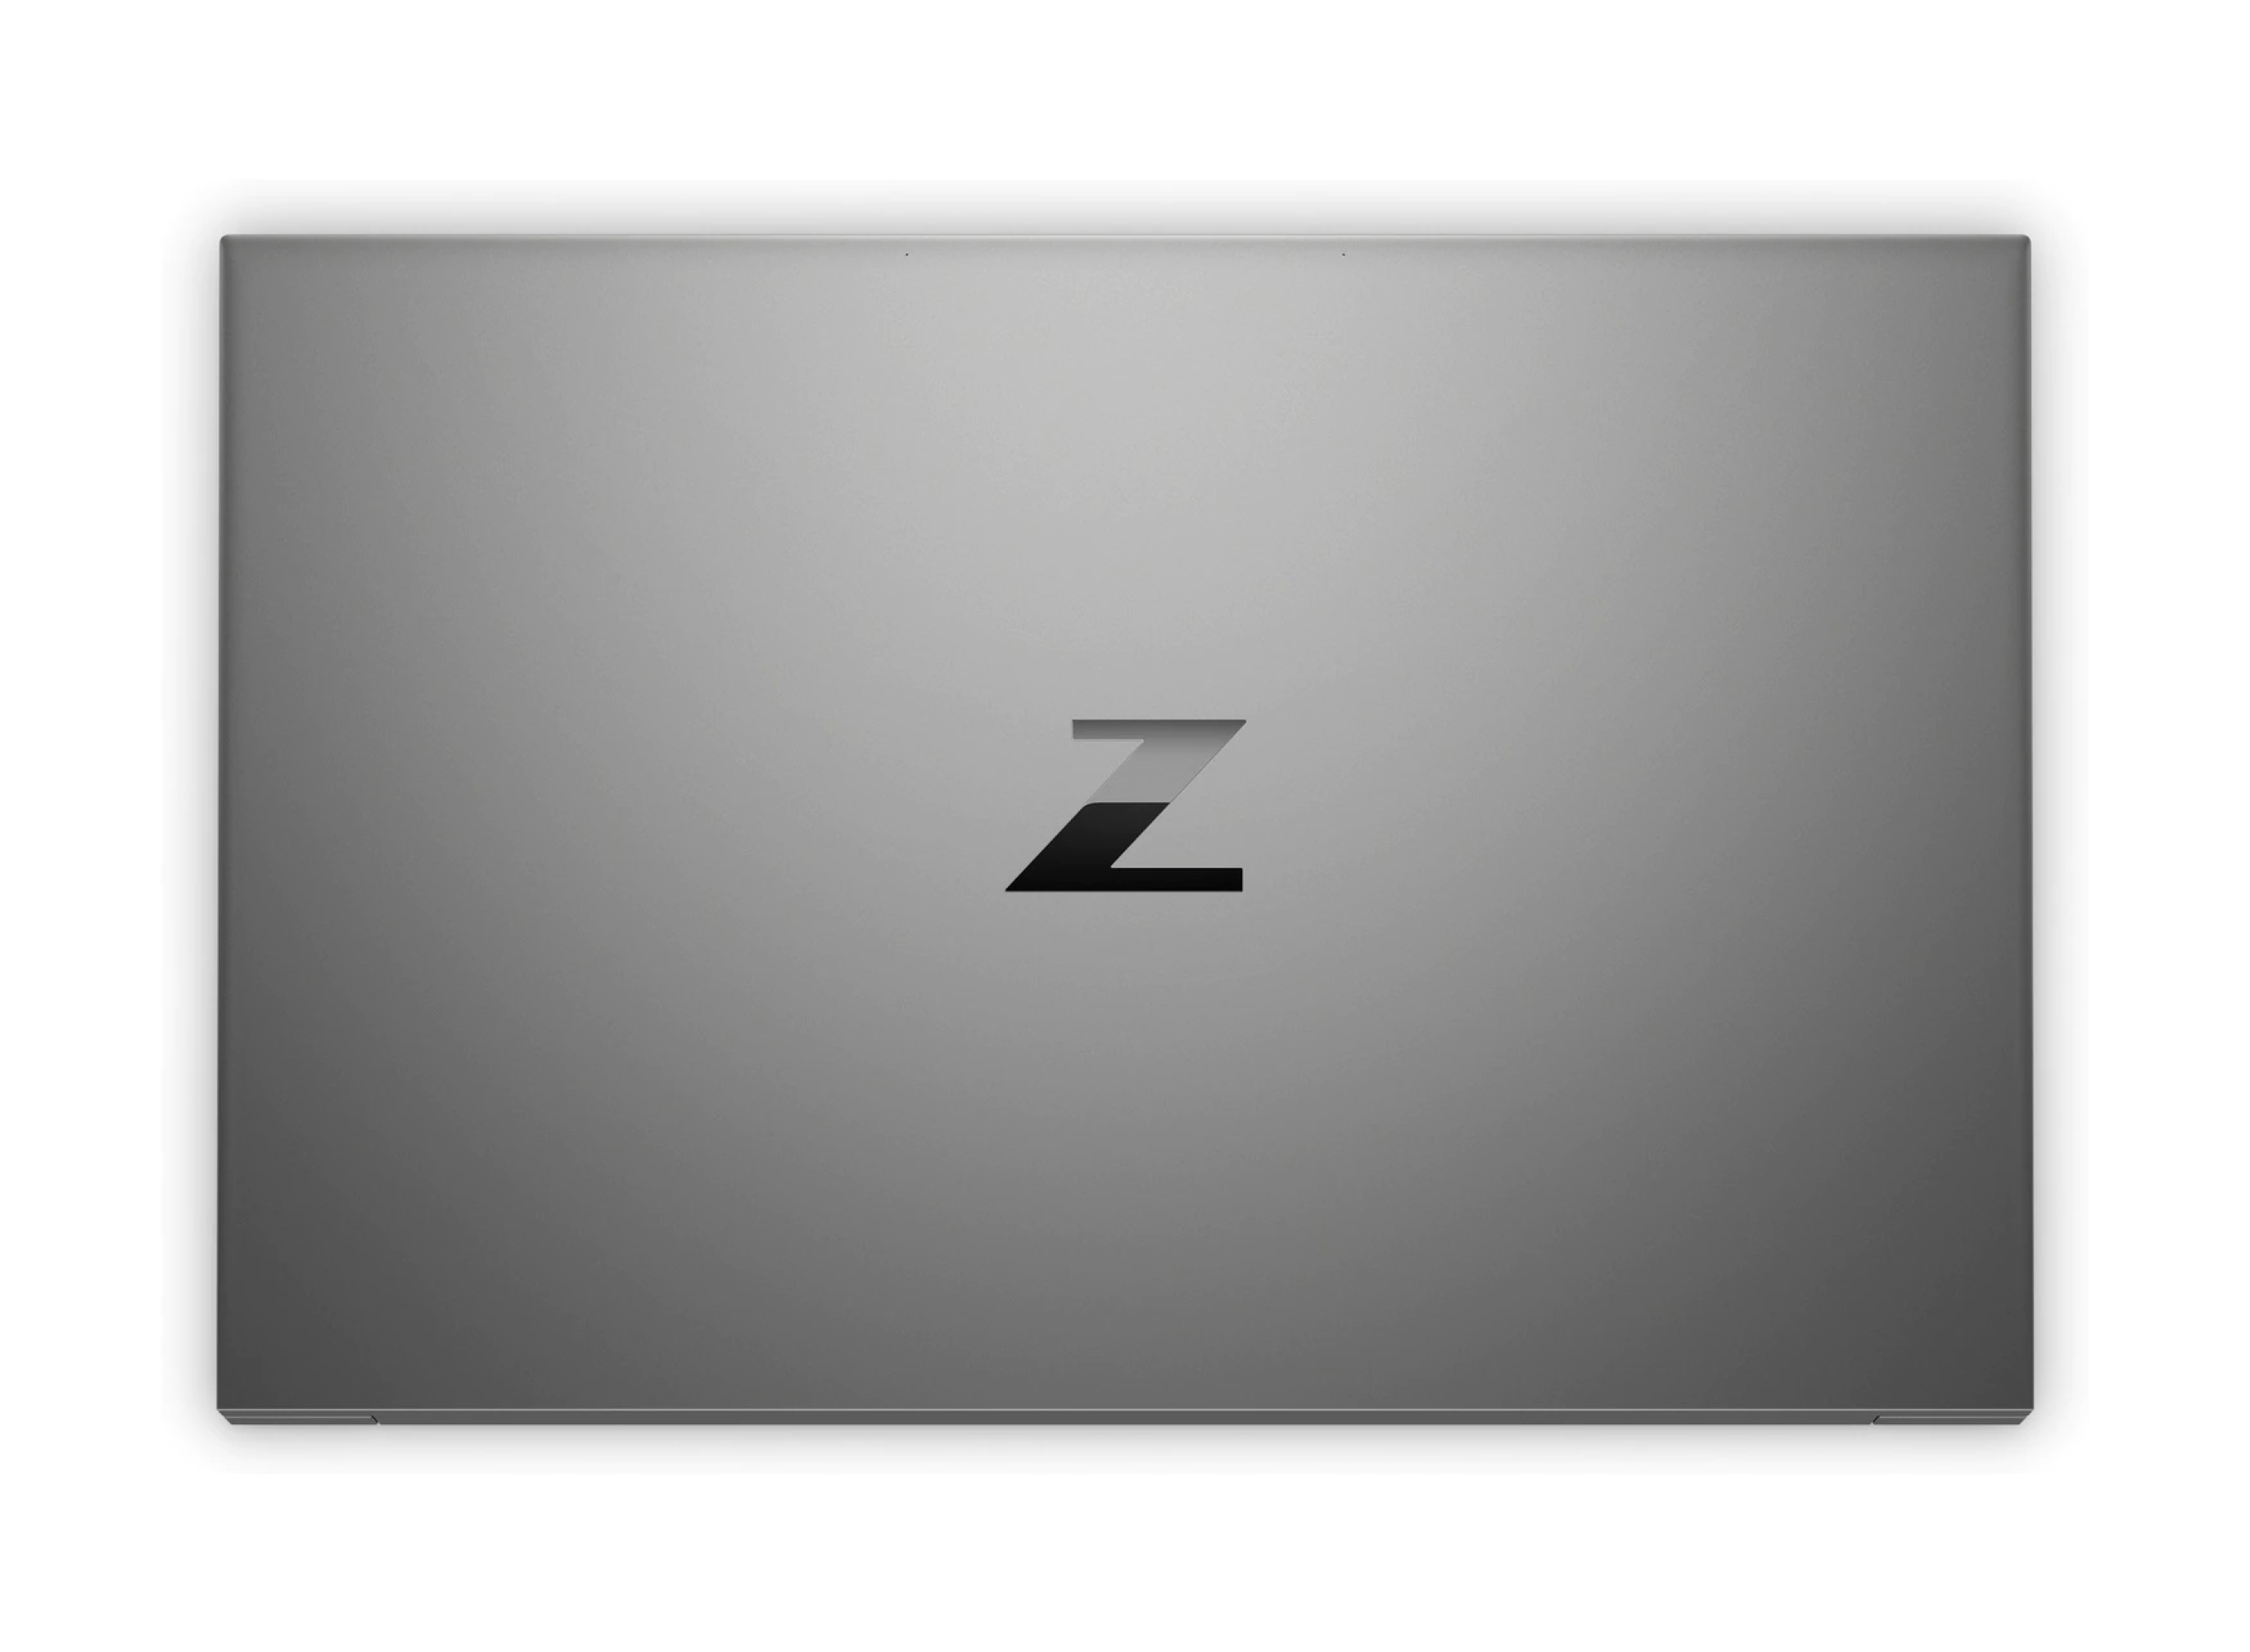  لپ تاپ HP ZBook G7 Studio با پردازنده نسل دهم Core i7 10750H | لاکچری لپ تاپ 